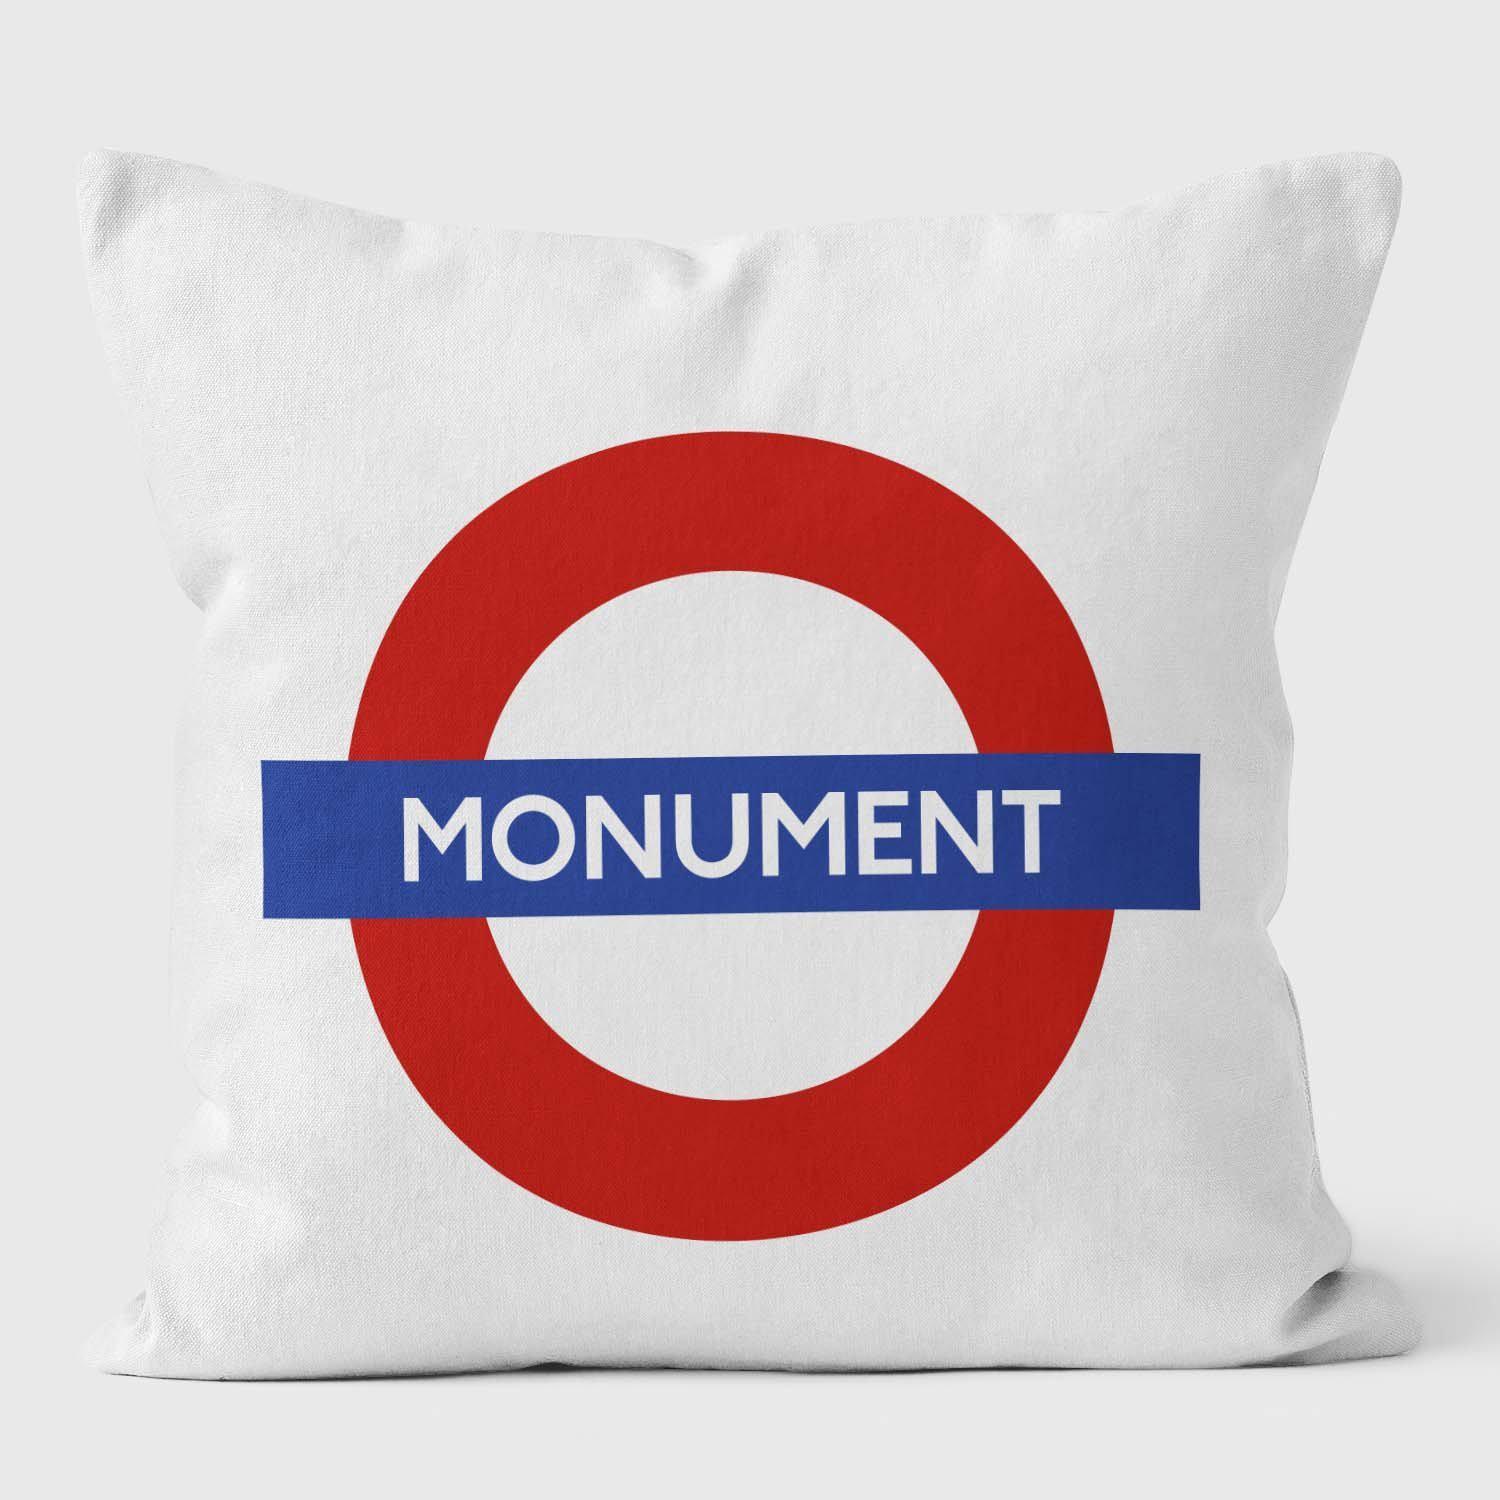 Monument London Underground Tube Station Roundel Cushion - Handmade Cushions UK - WeLoveCushions